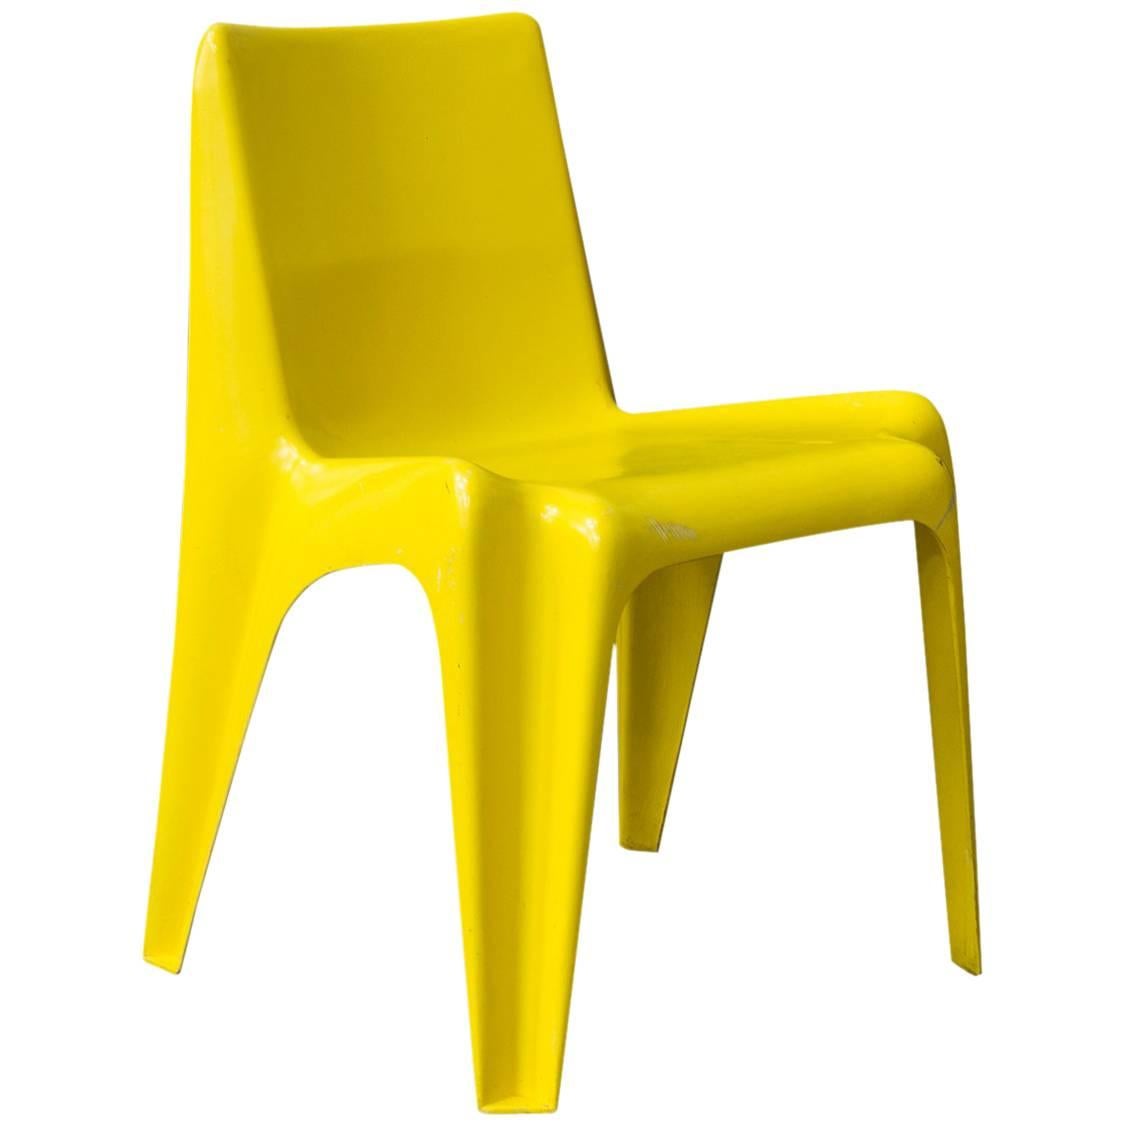 Seltener organischer Kunststoff-Stuhl aus Gelb, um 1970